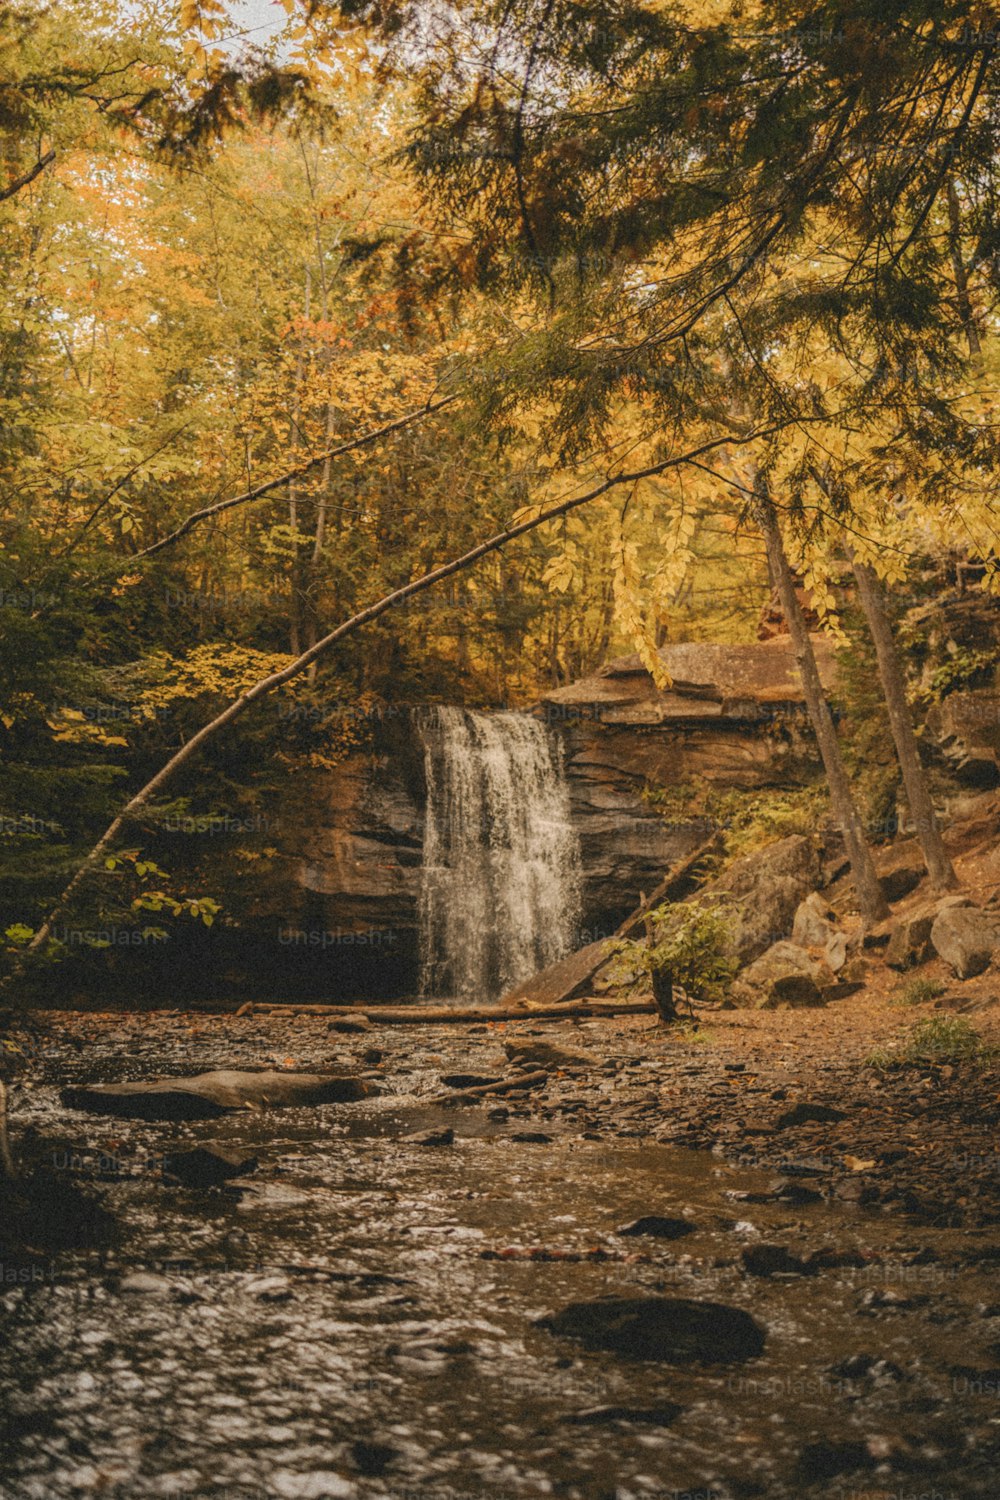 Ein Wasserfall im Wald mit einem Mann, der daneben steht